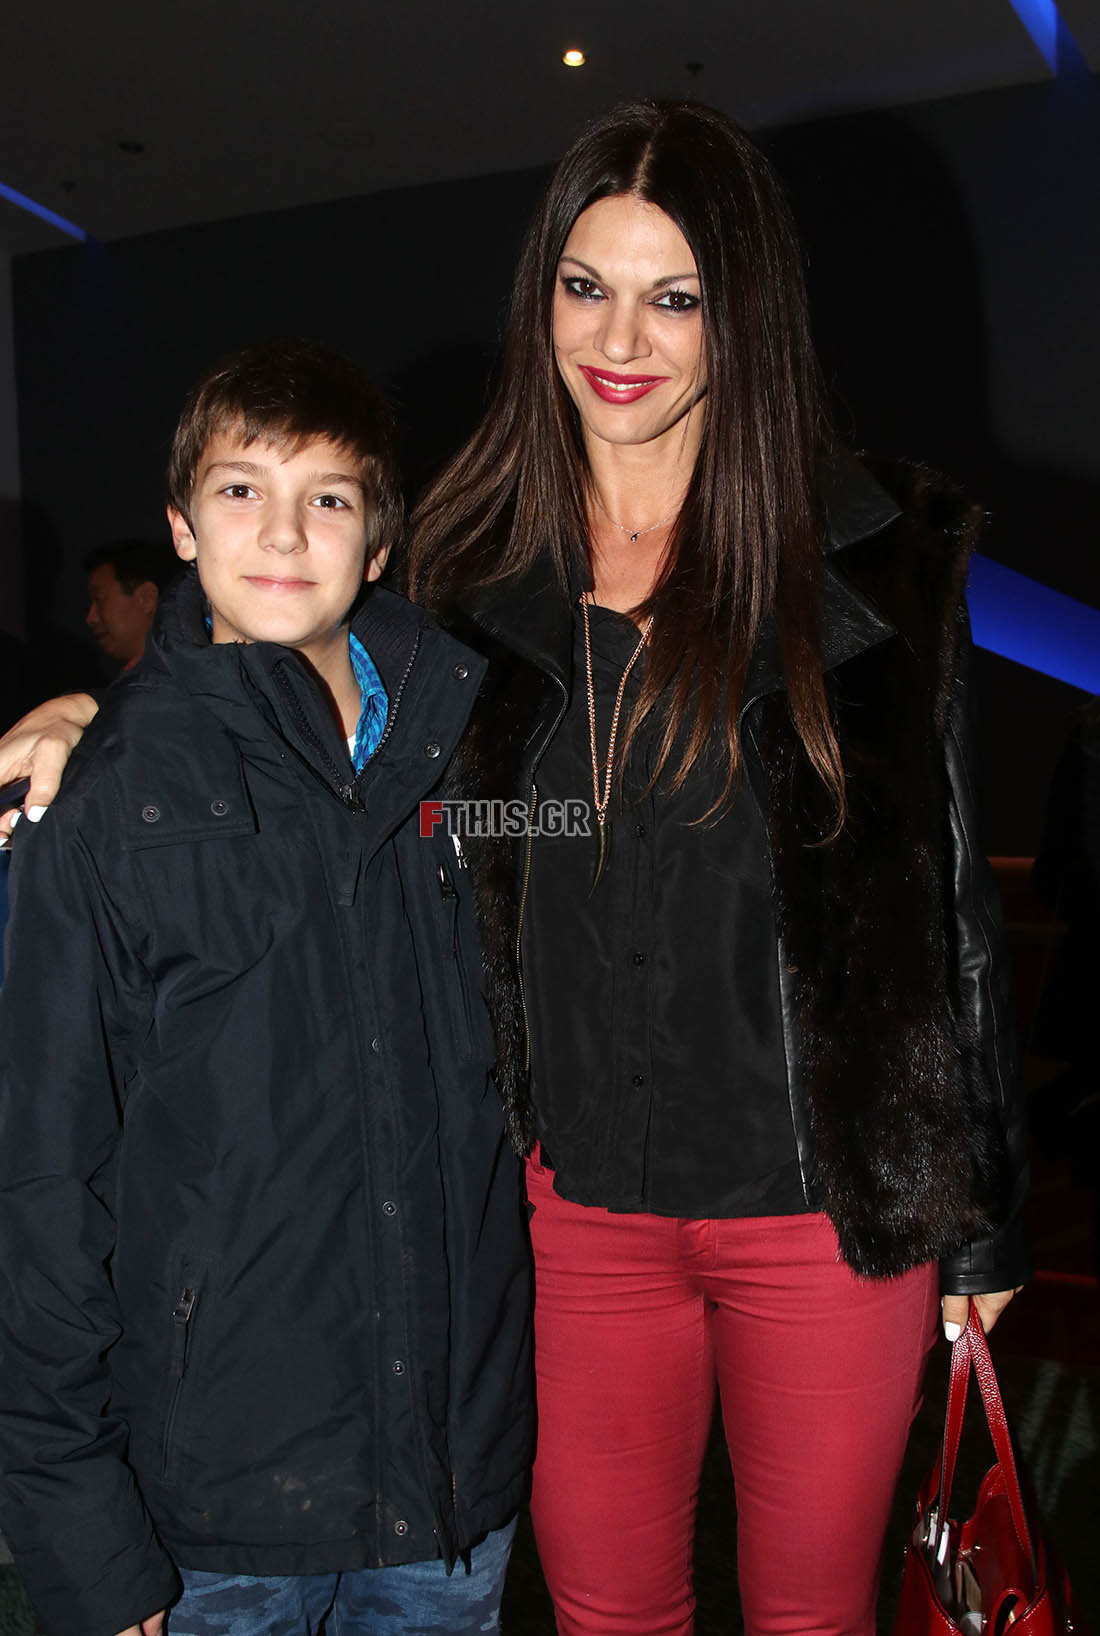 Ο 12χρονος γιος της Σοφίας Παθέκα με τη μητέρα του στο θέατρο